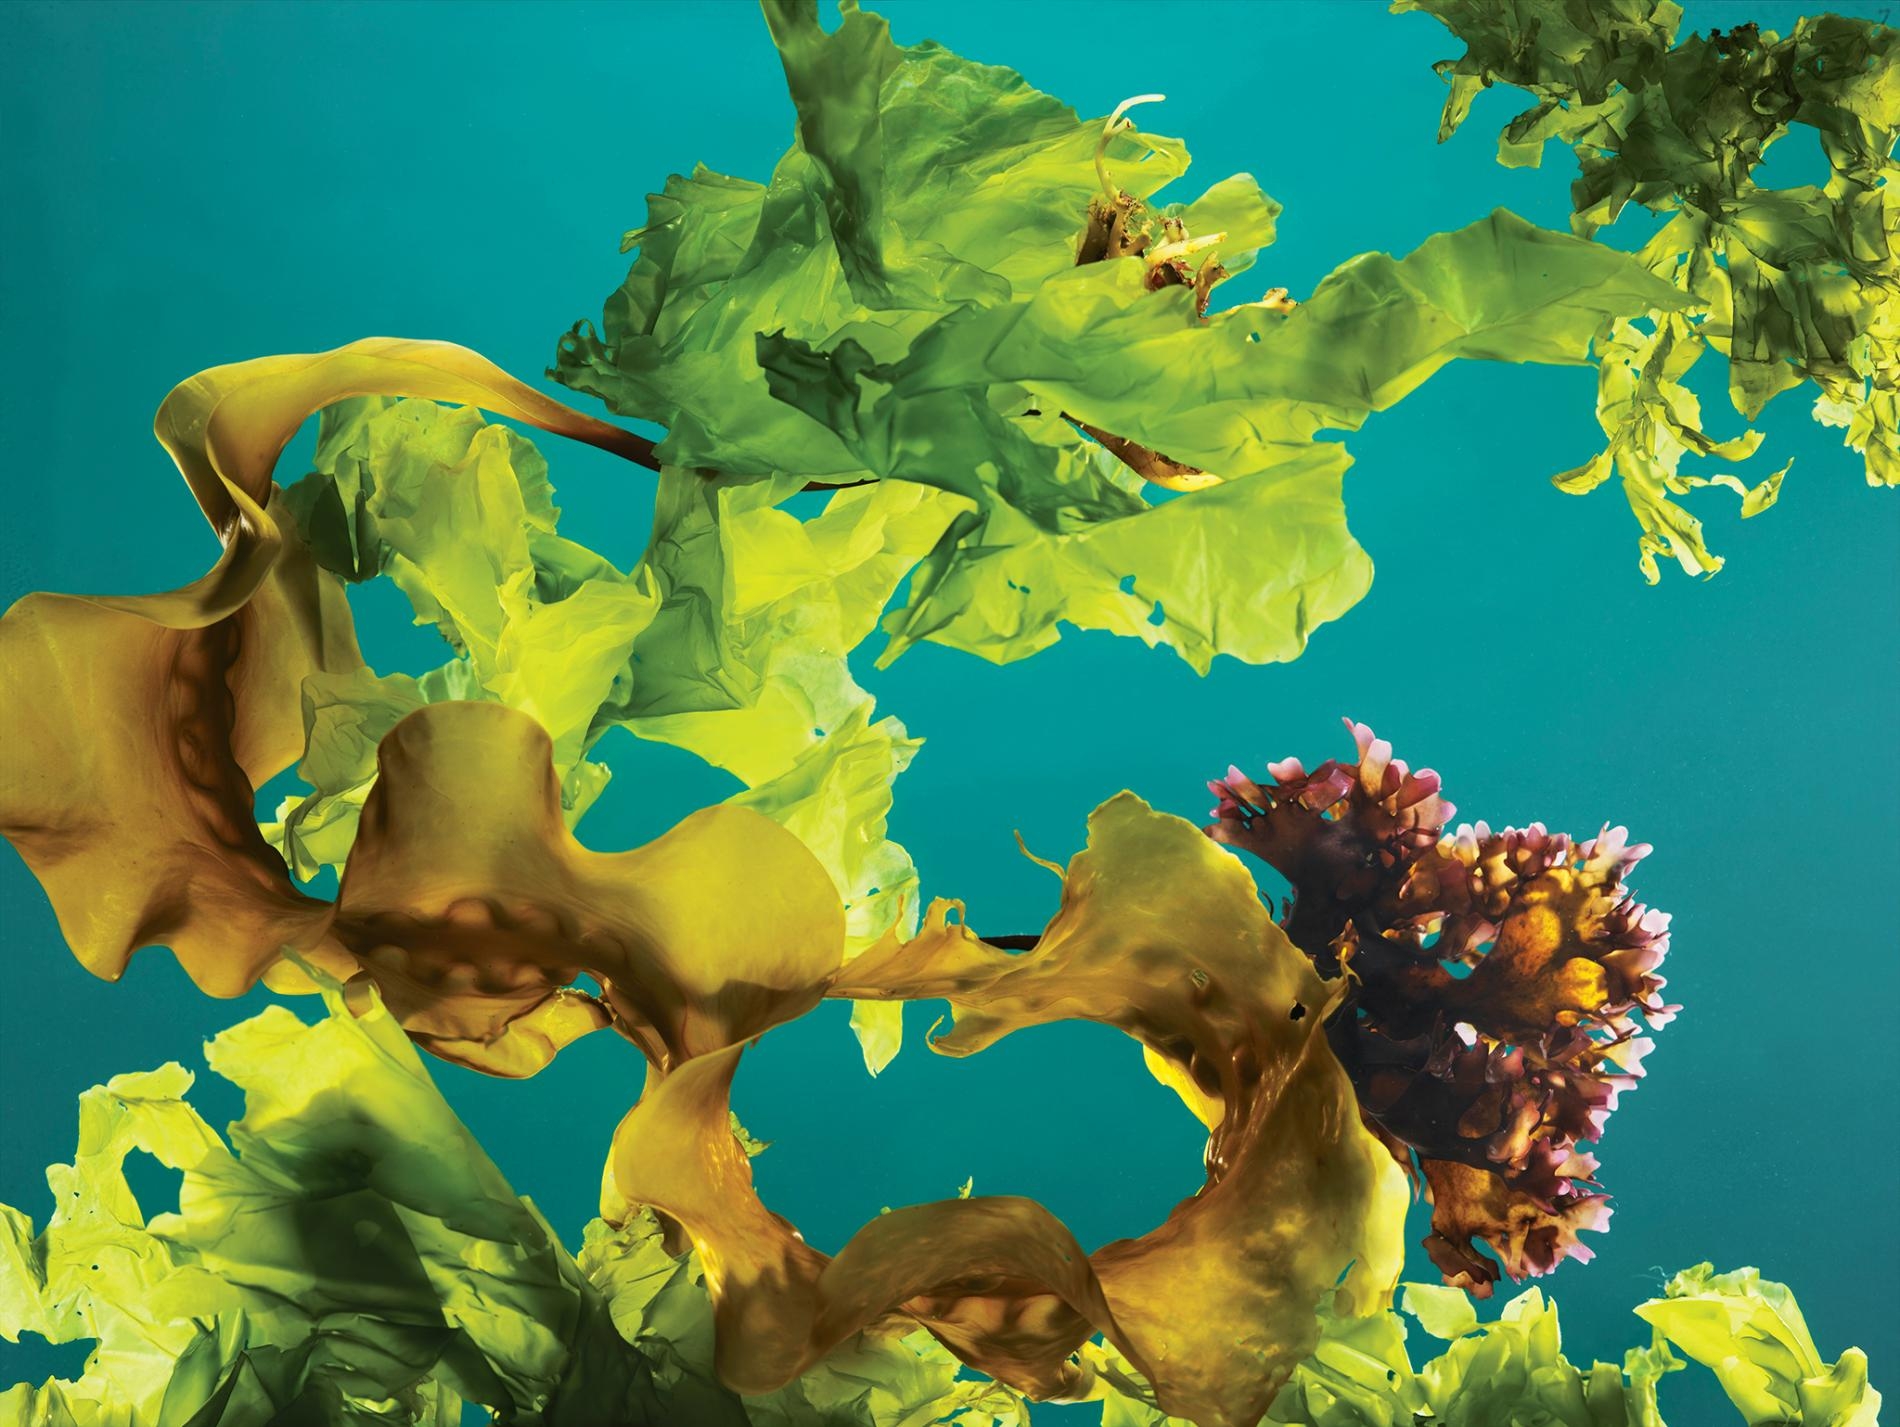 緬因外海採收的海帶 （kelp）、愛爾蘭紅藻（Irish moss）和石蓴（sea lettuce）。PHOTOGRAPH BY REBECCA HALE, NAT GEO IMAGE COLLECTION